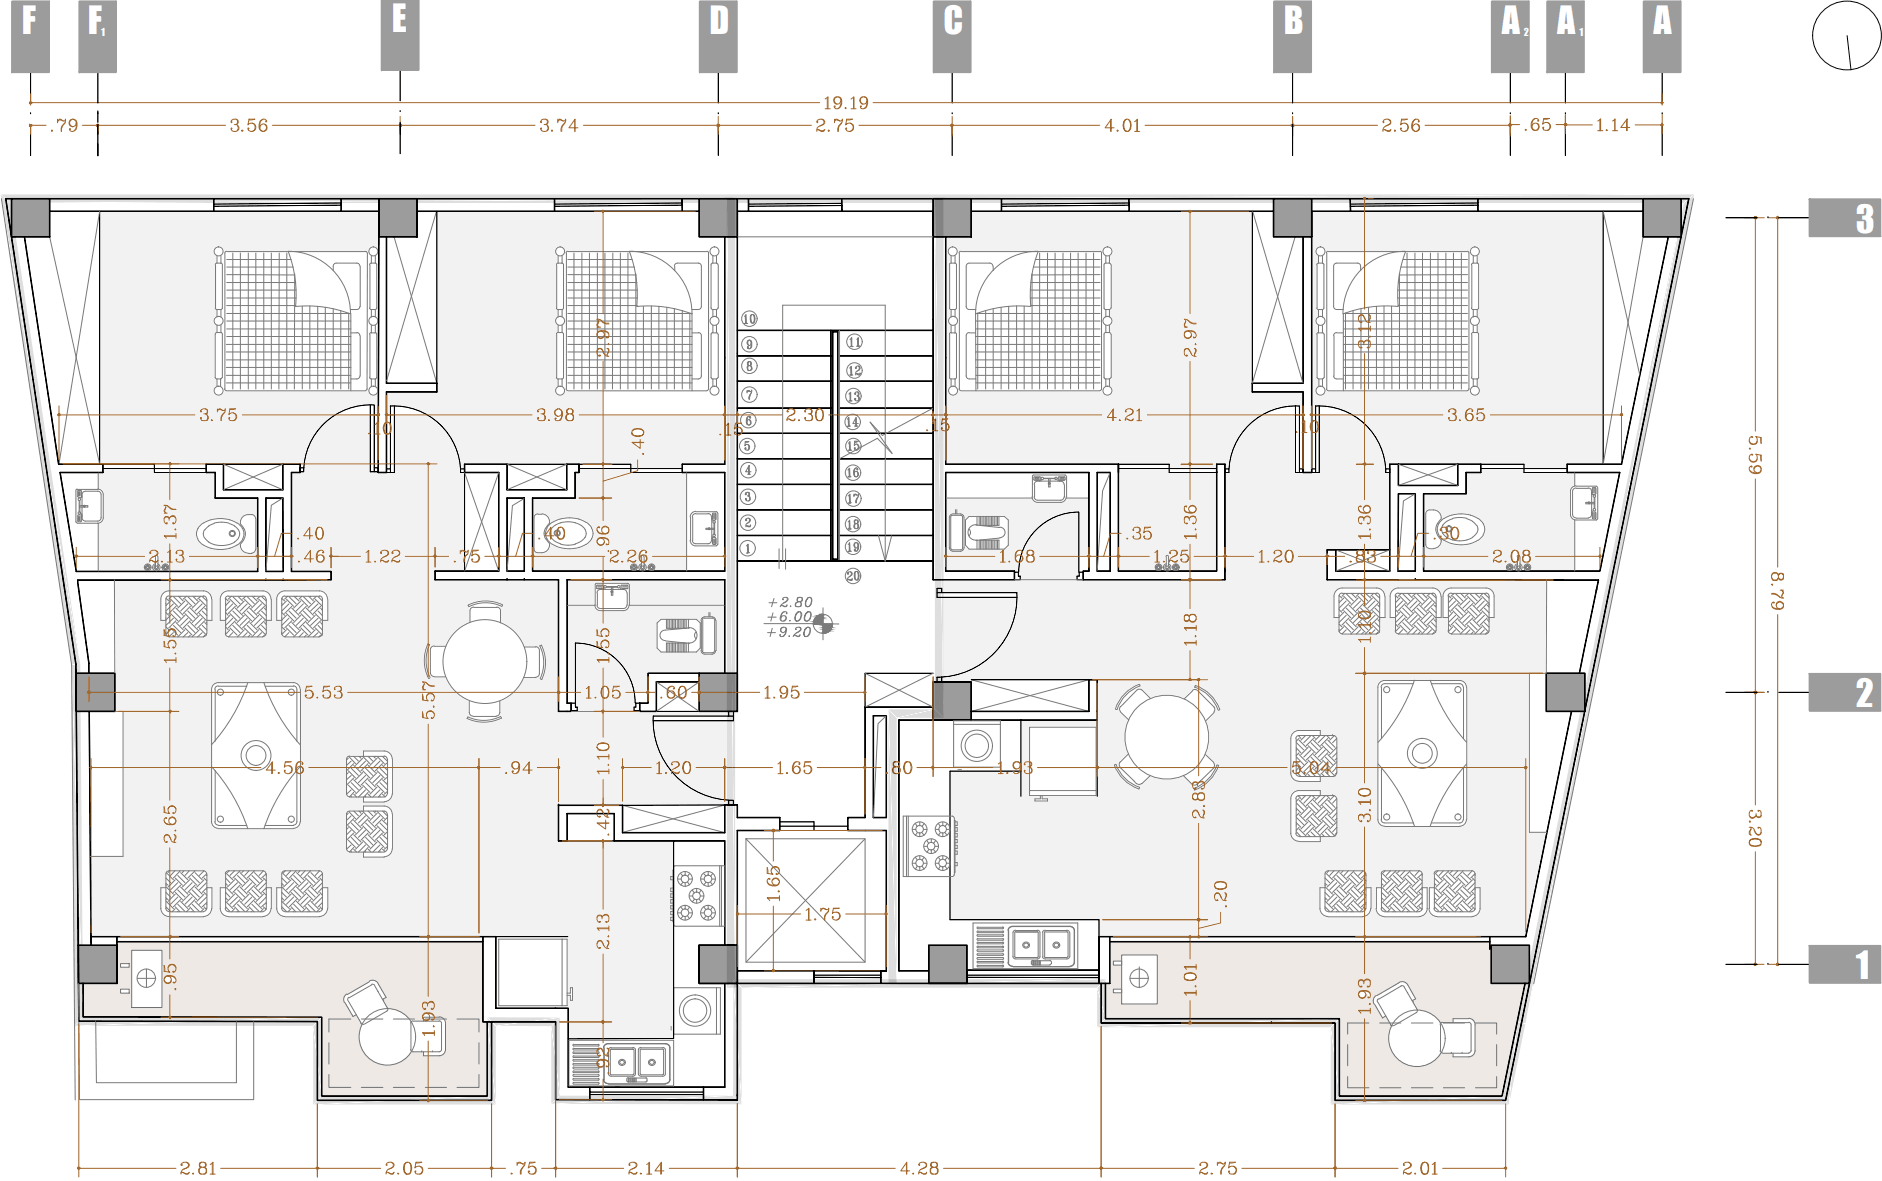 plan 1, after design - an apartment near anzali